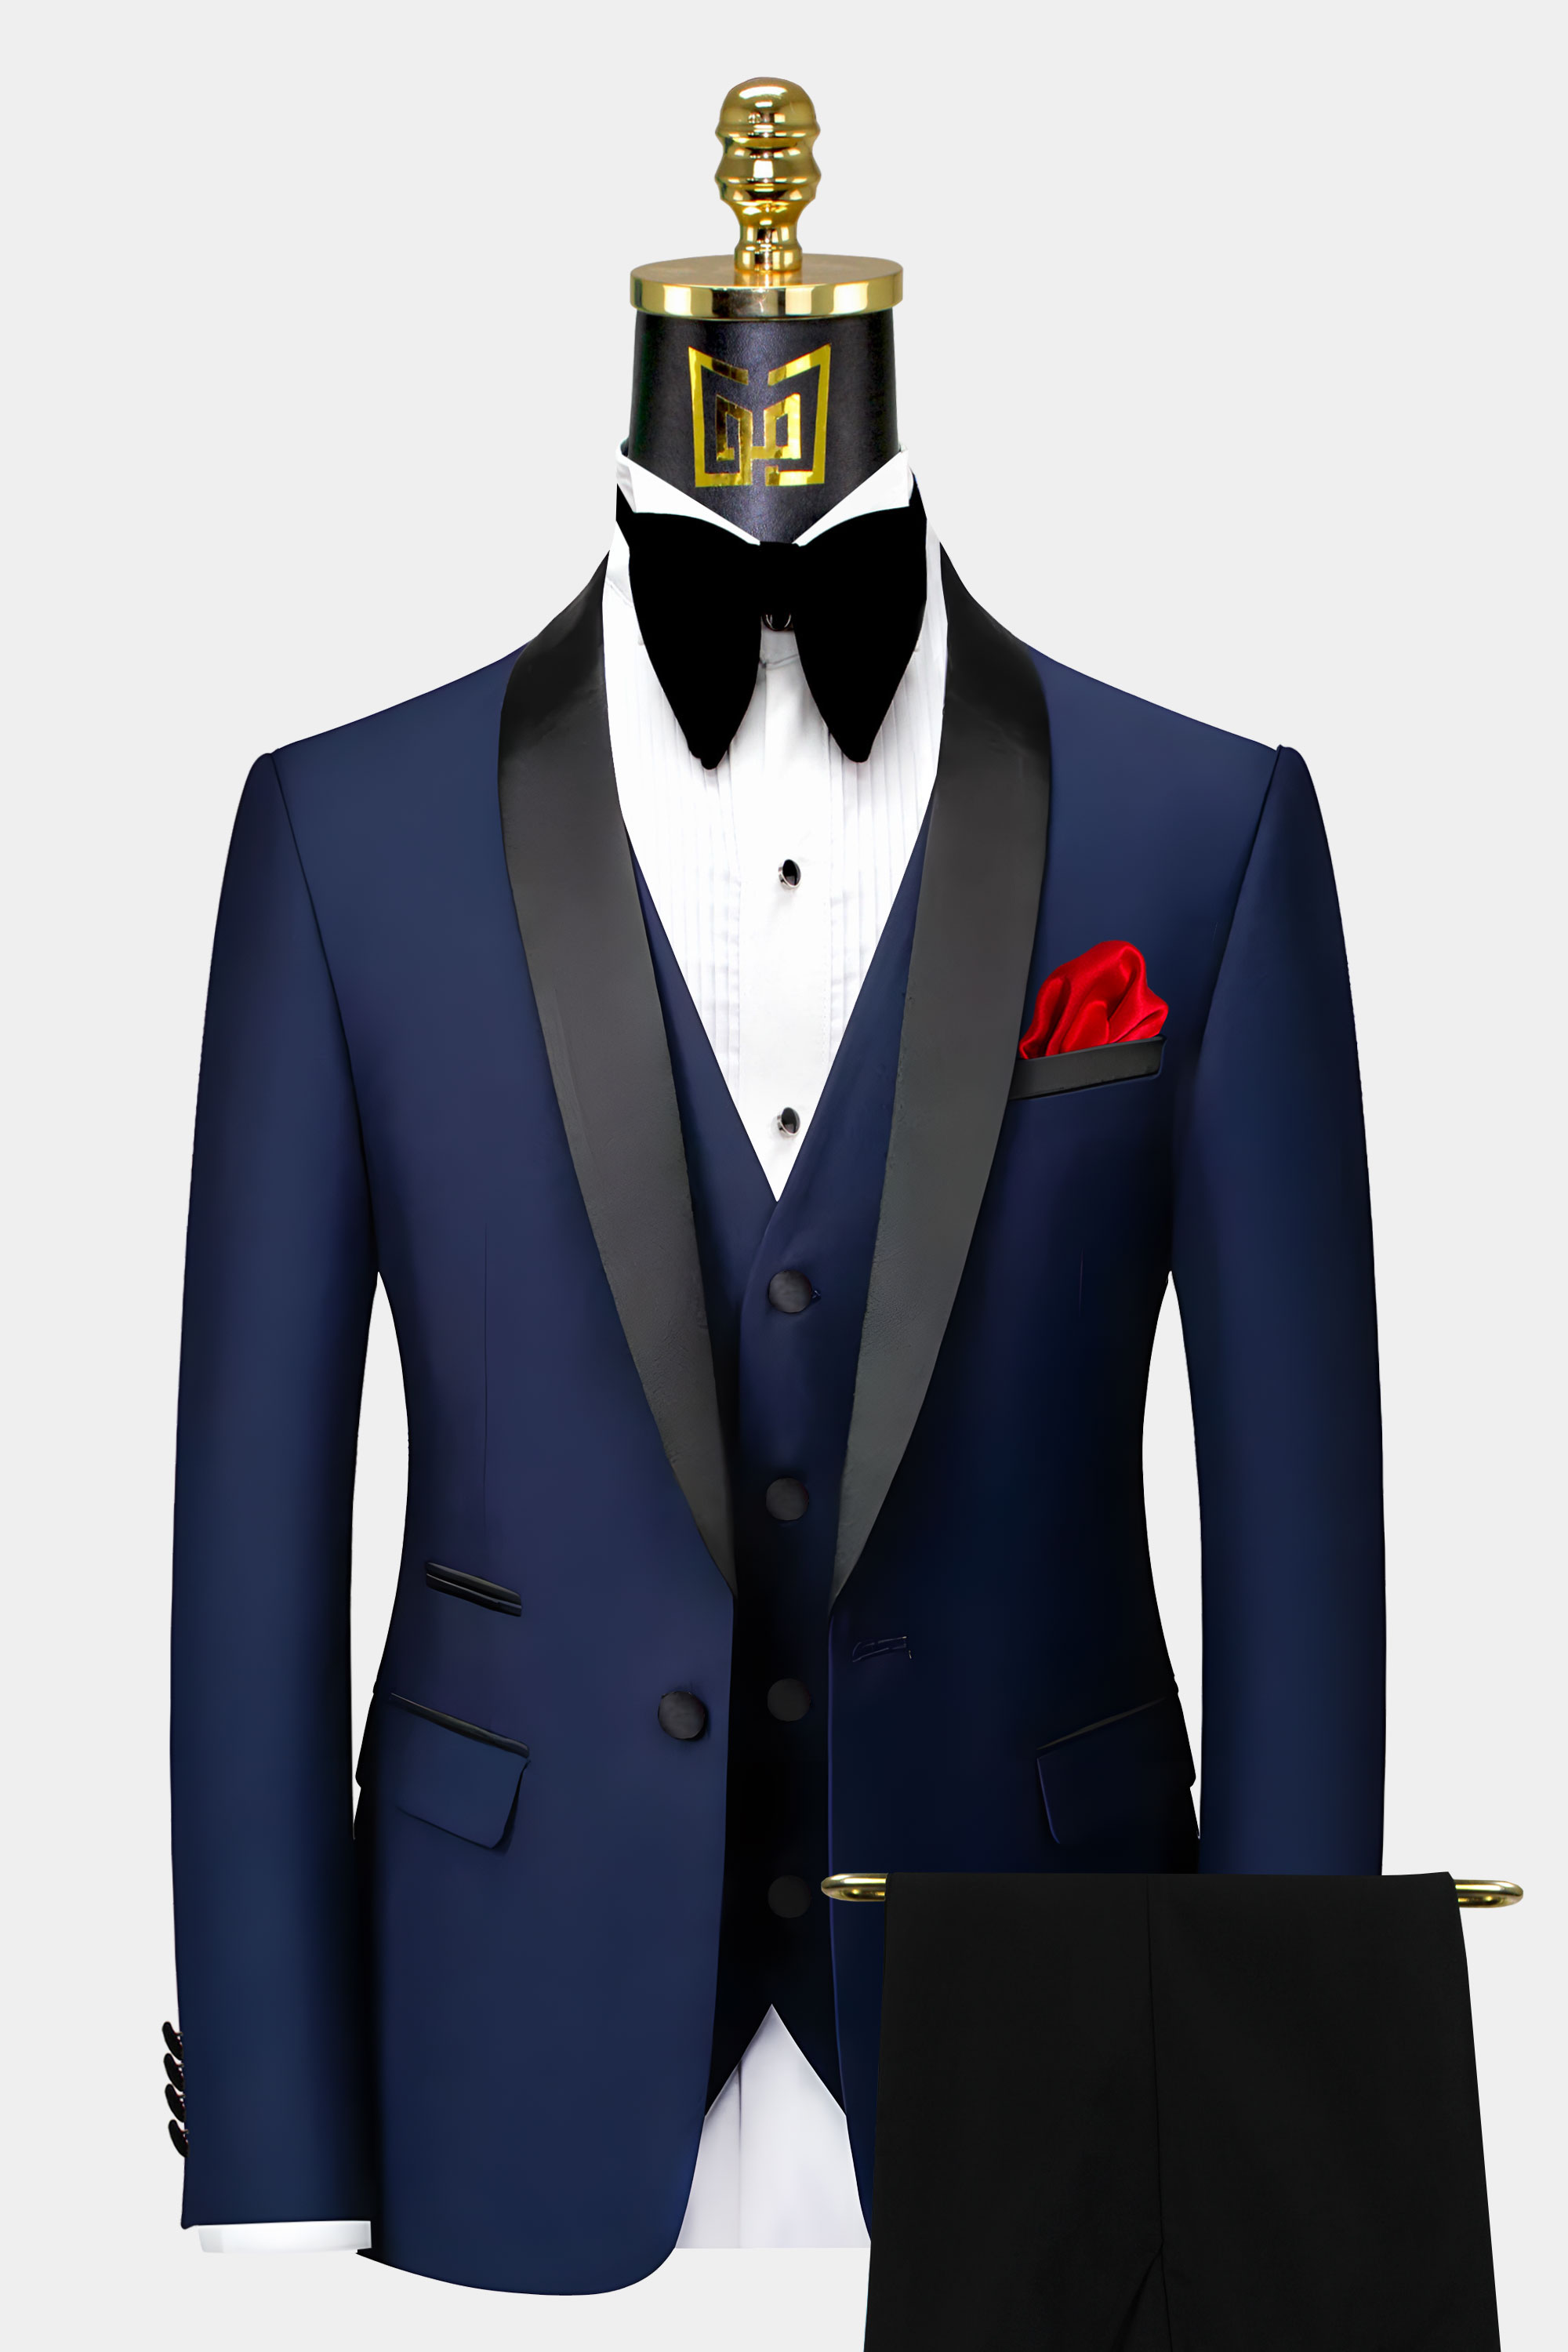 Mens-Navy-Blue-Tuxedo-Groom-Wedding-Suit-from-Gentlemansguru.com